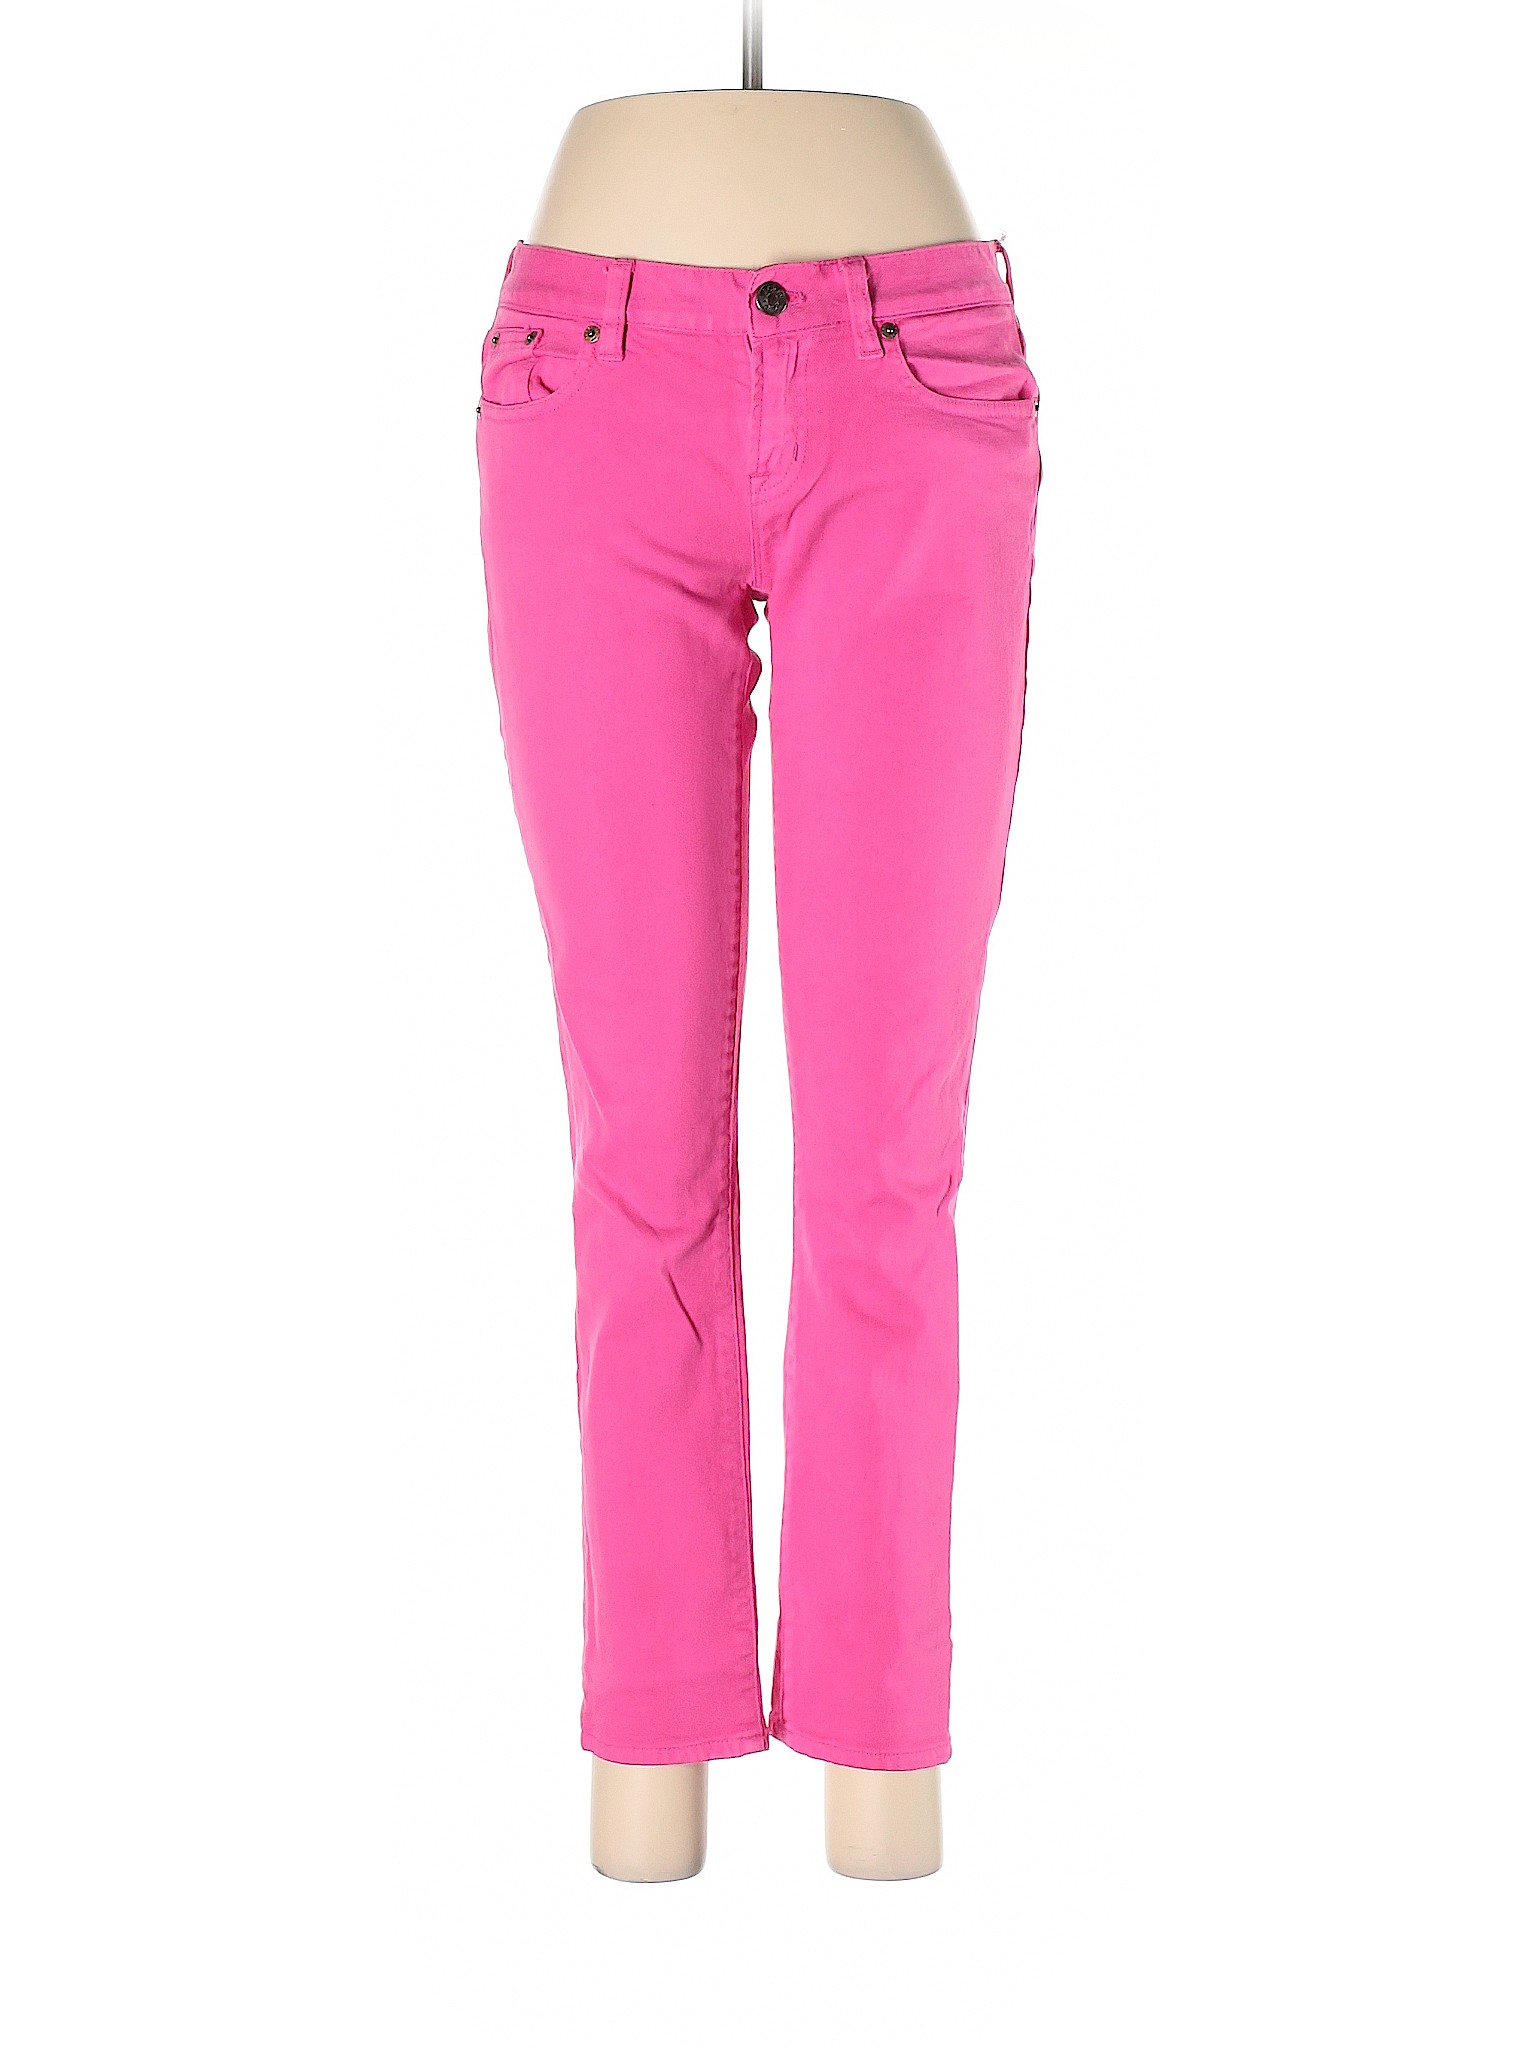 J.Crew Women Pink Jeans 28W | eBay